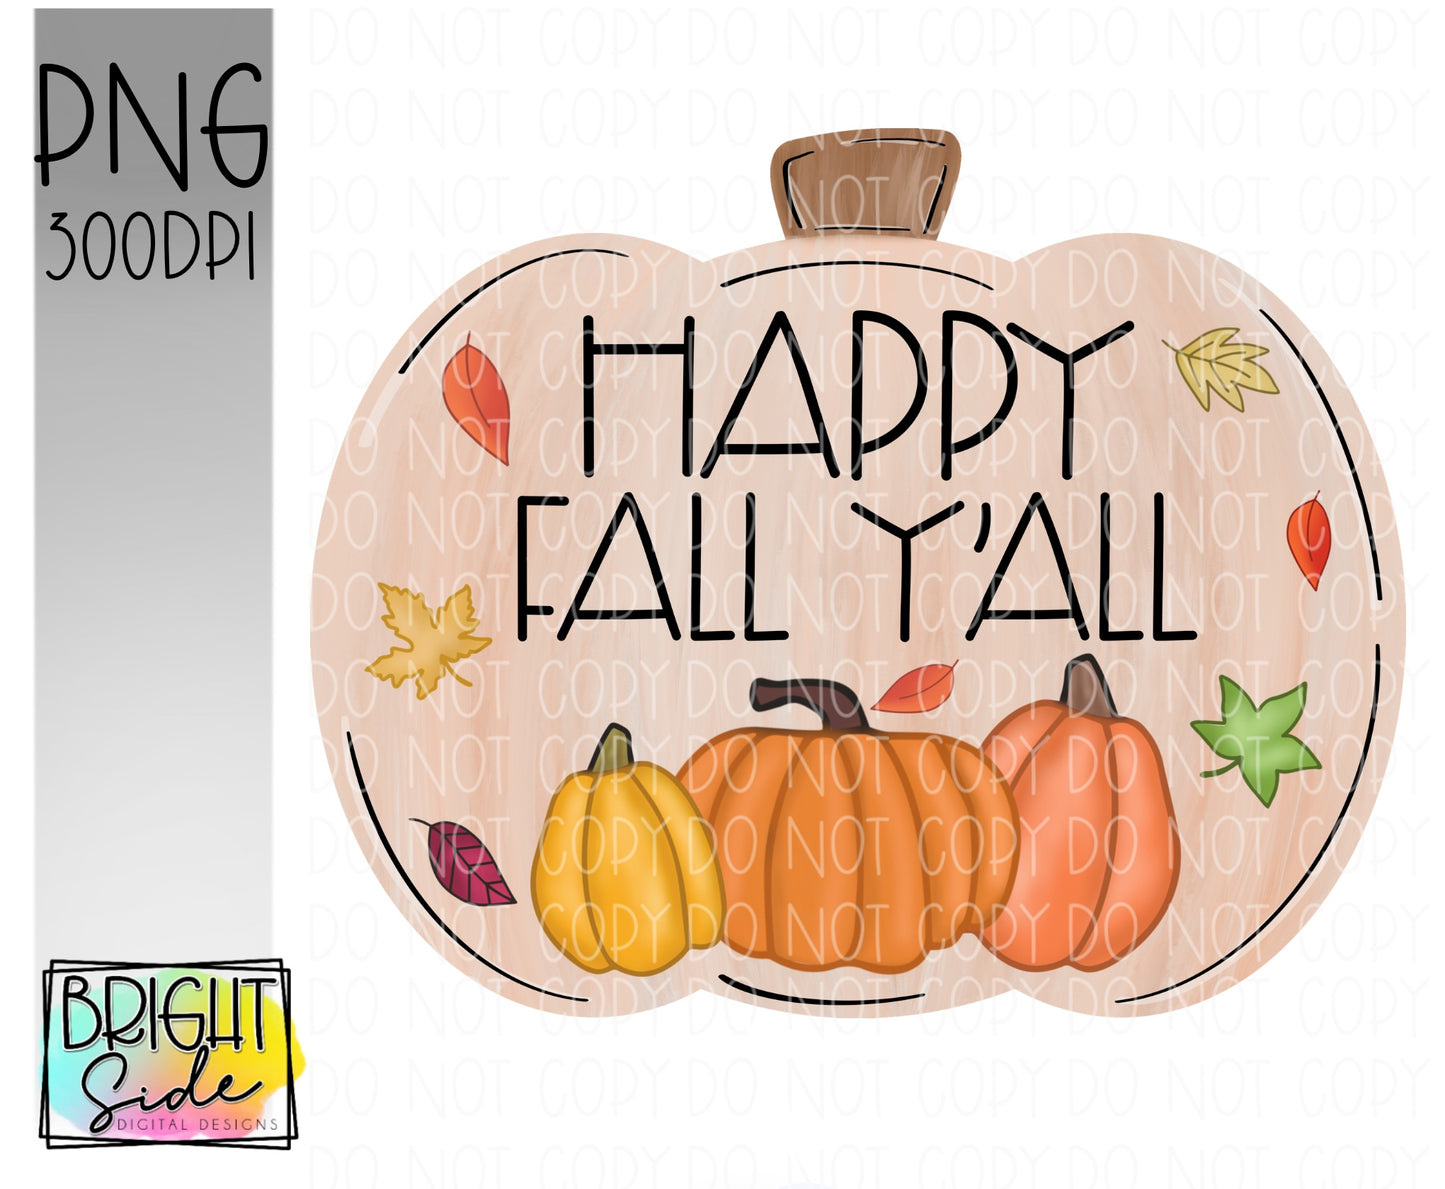 Happy Fall Y’all Pumpkin